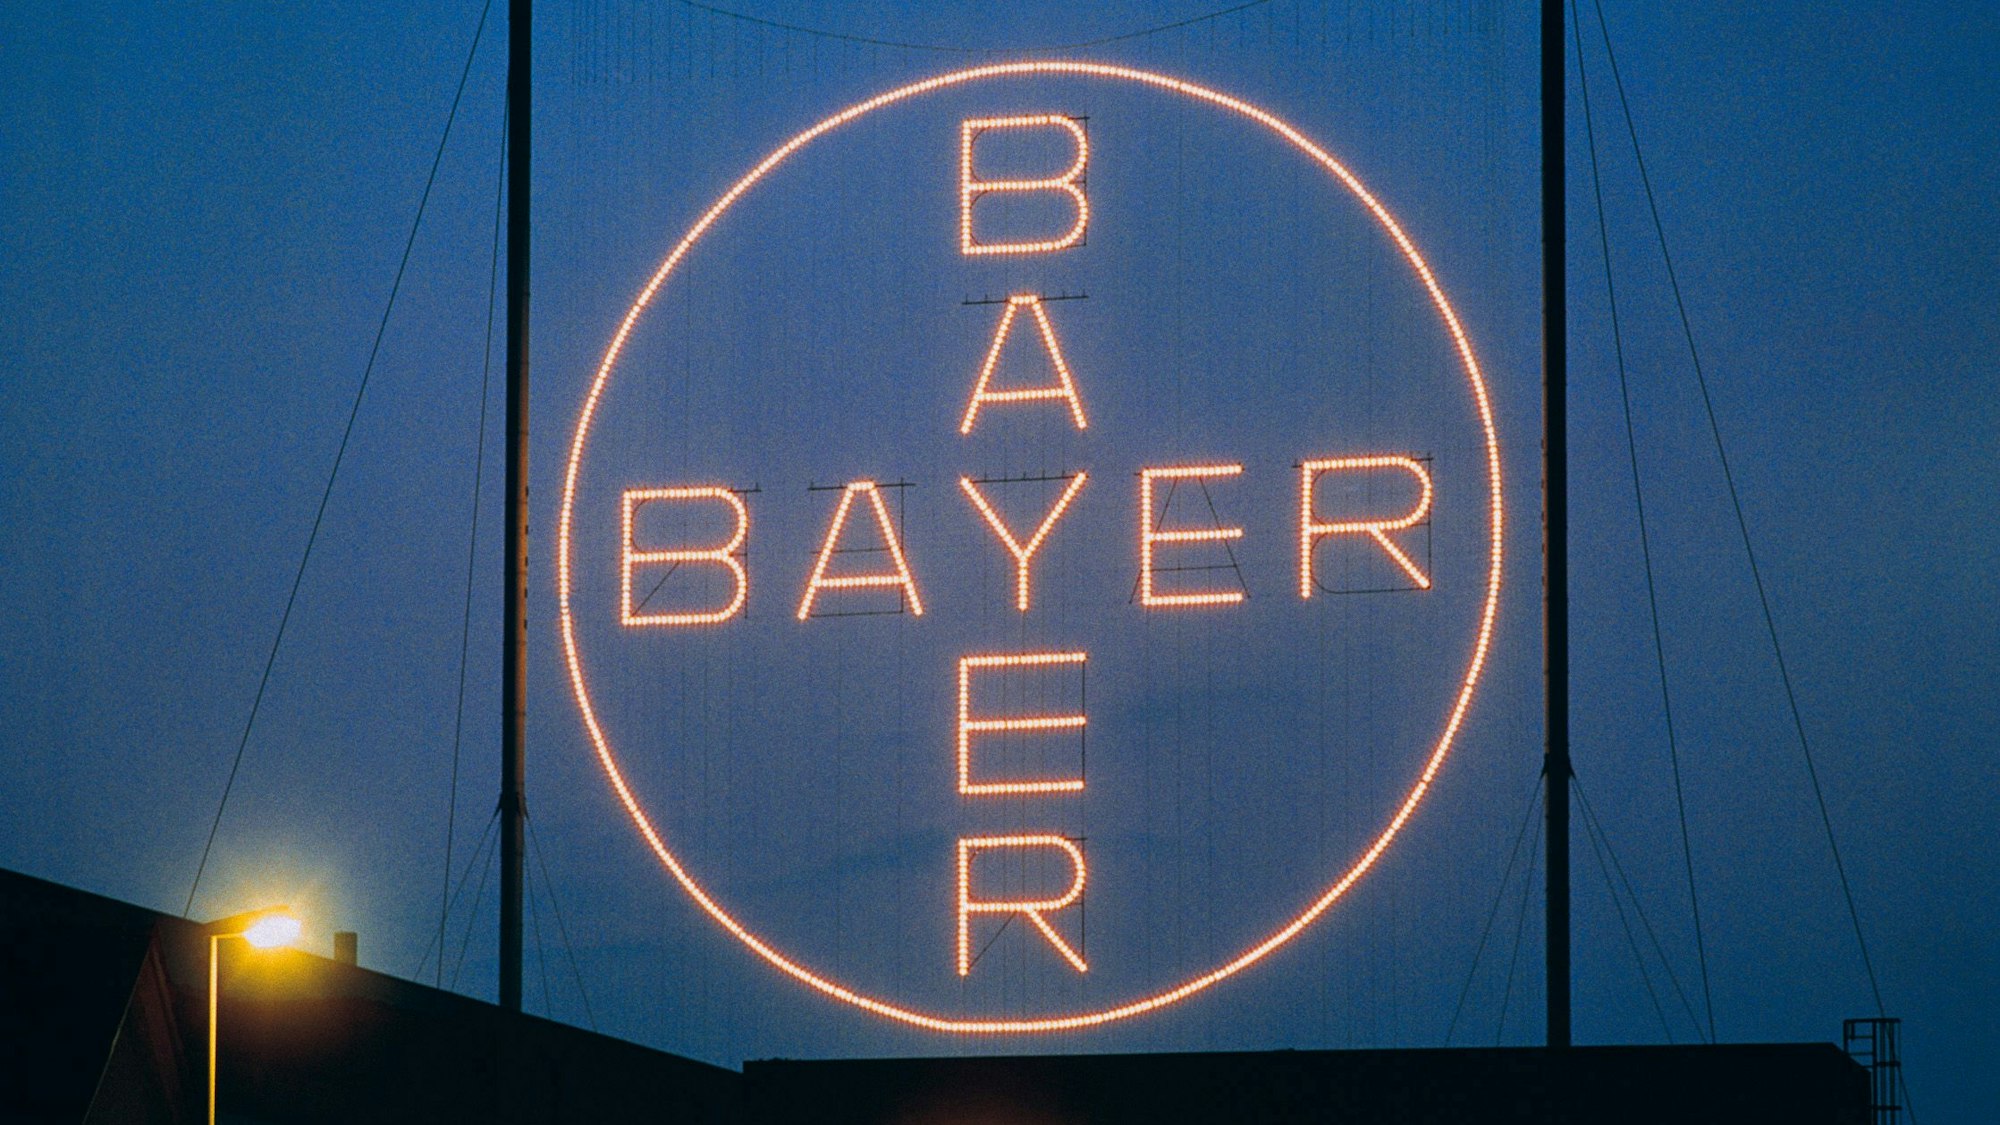 Das Bayer-Kreuz in Leverkusen bei Nacht.